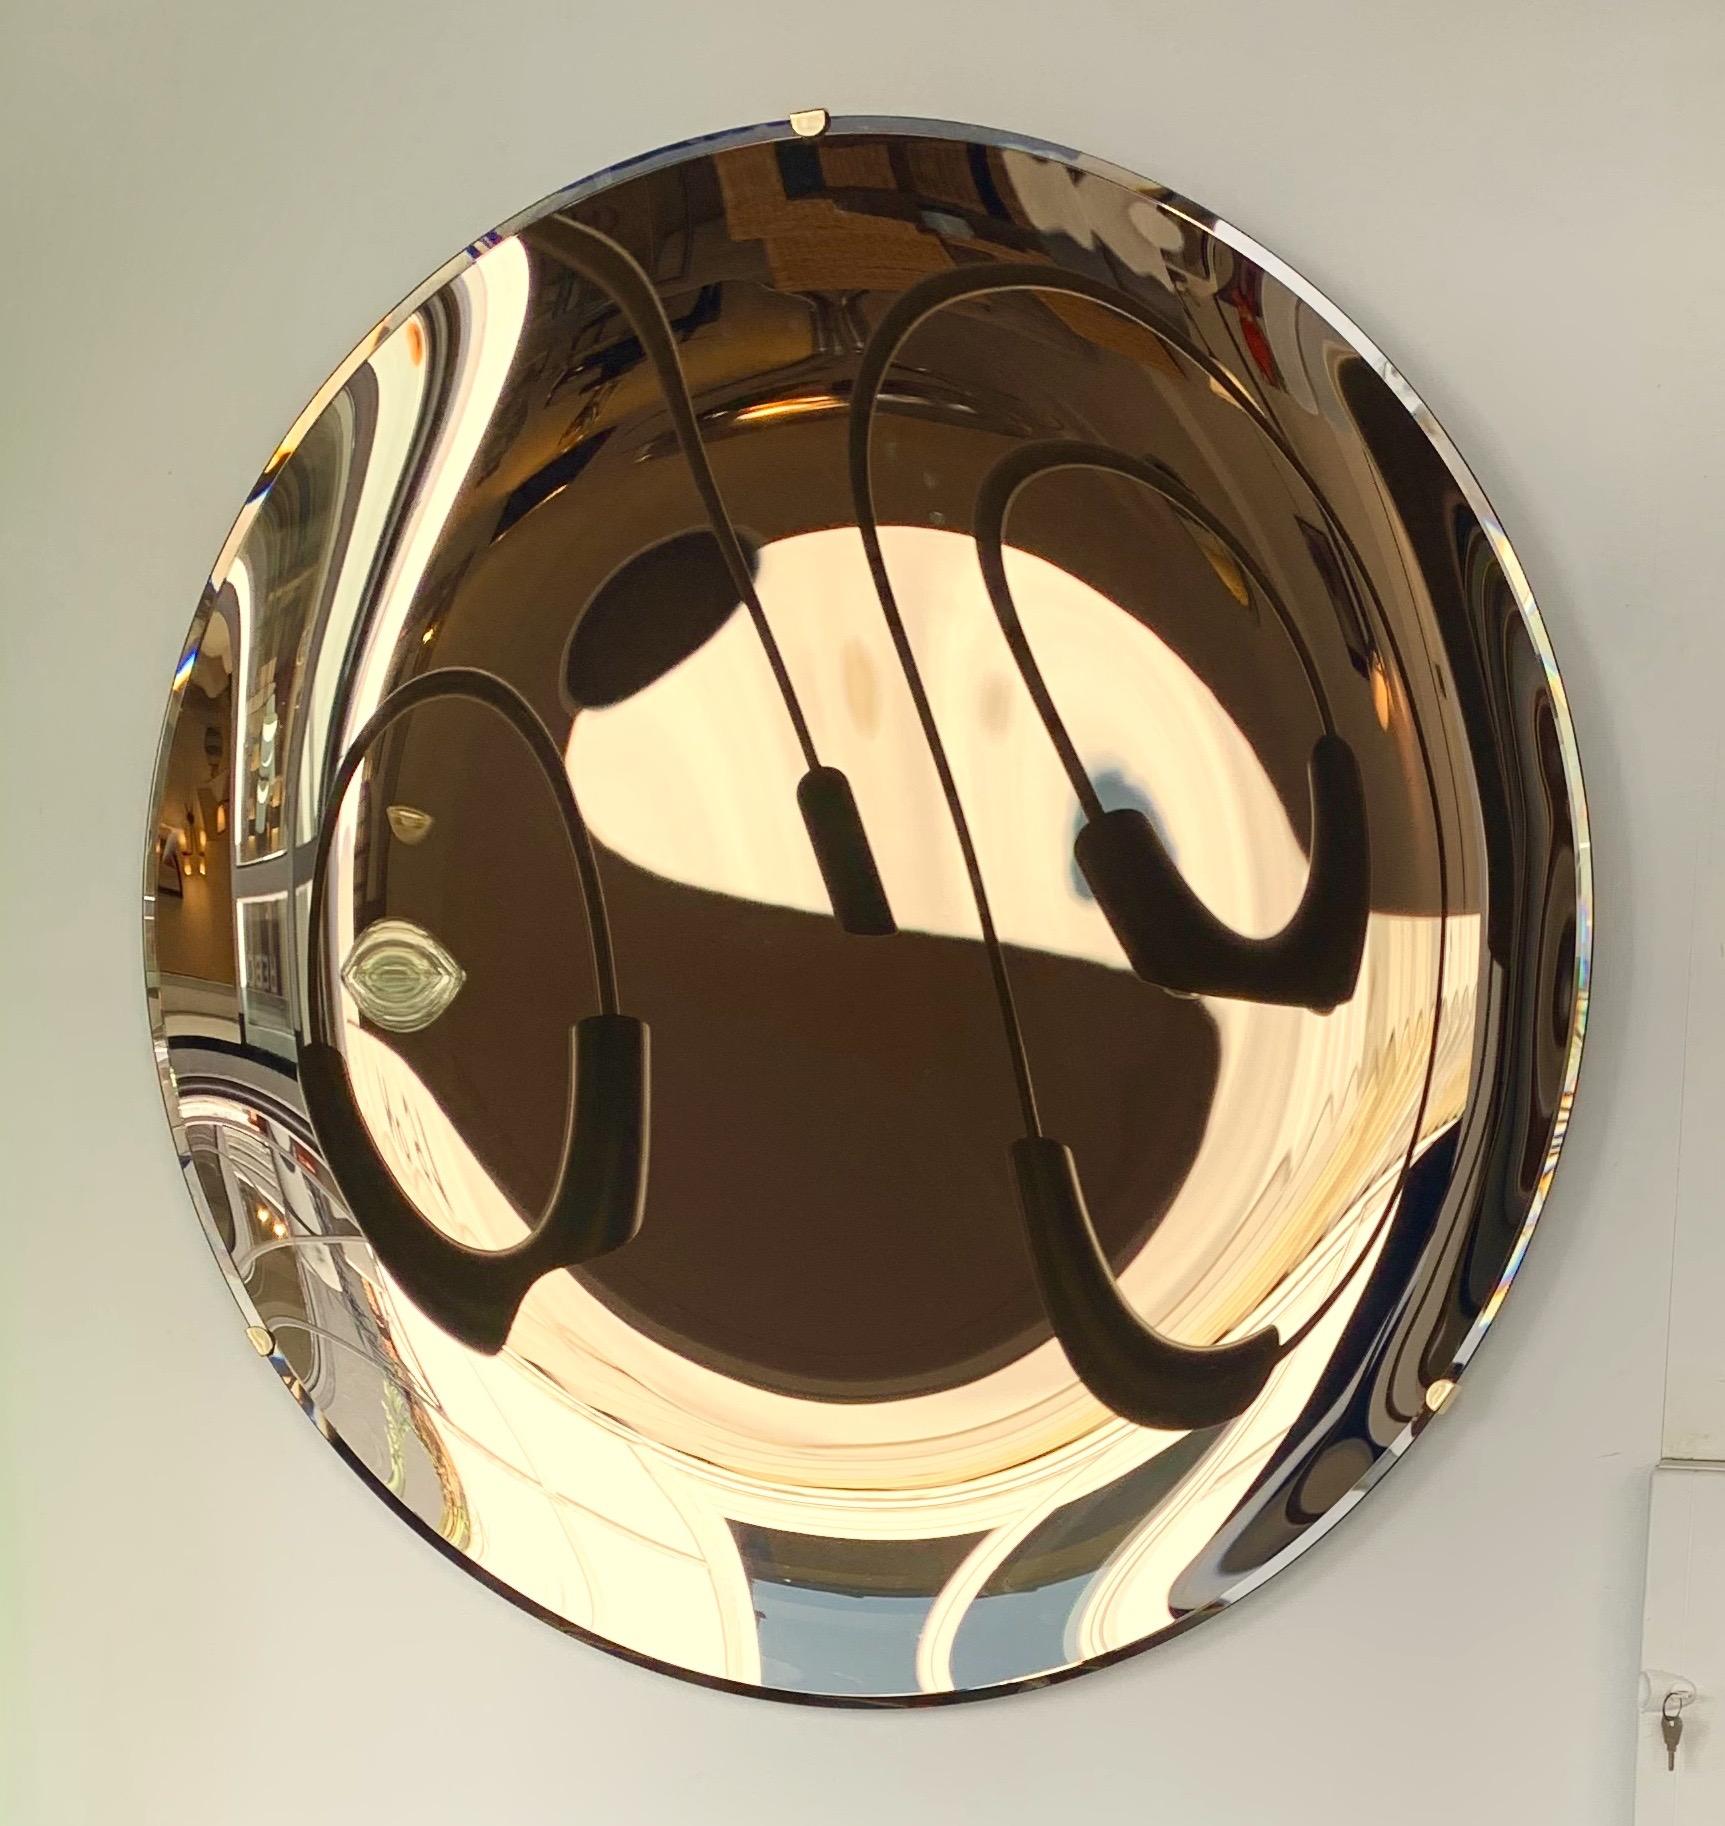 Miroir mural concave à courbe contemporaine en bronze doré, structure en laiton. Travail artisanal fait à la main par un petit atelier de design italien utilisant l'ancienne technique de mercurisation.

diamètre standard dimensions indiquées dans la